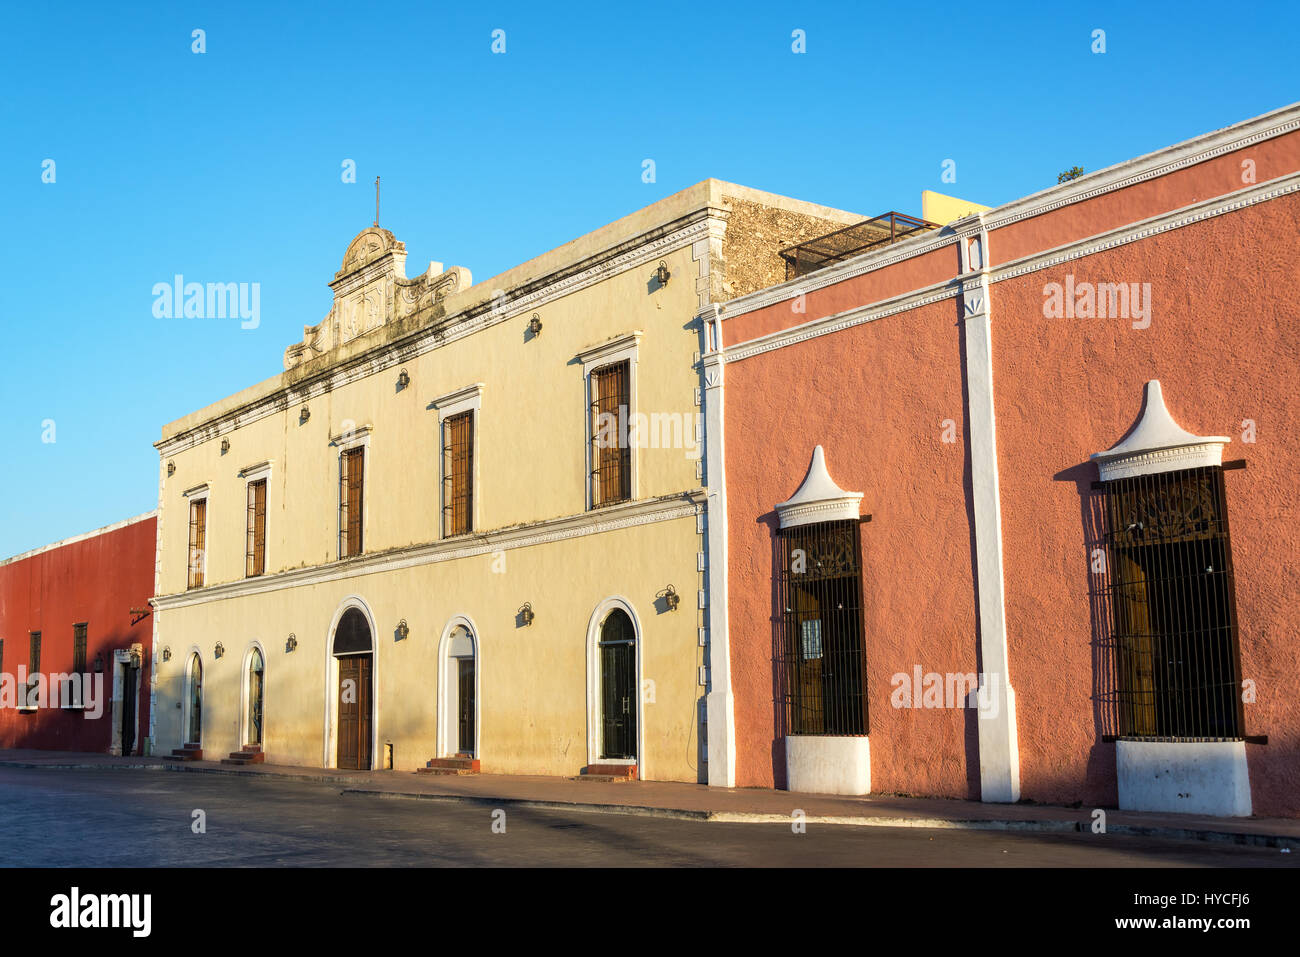 L'architecture coloniale colorée dans le centre historique de Valladolid, Mexique Banque D'Images